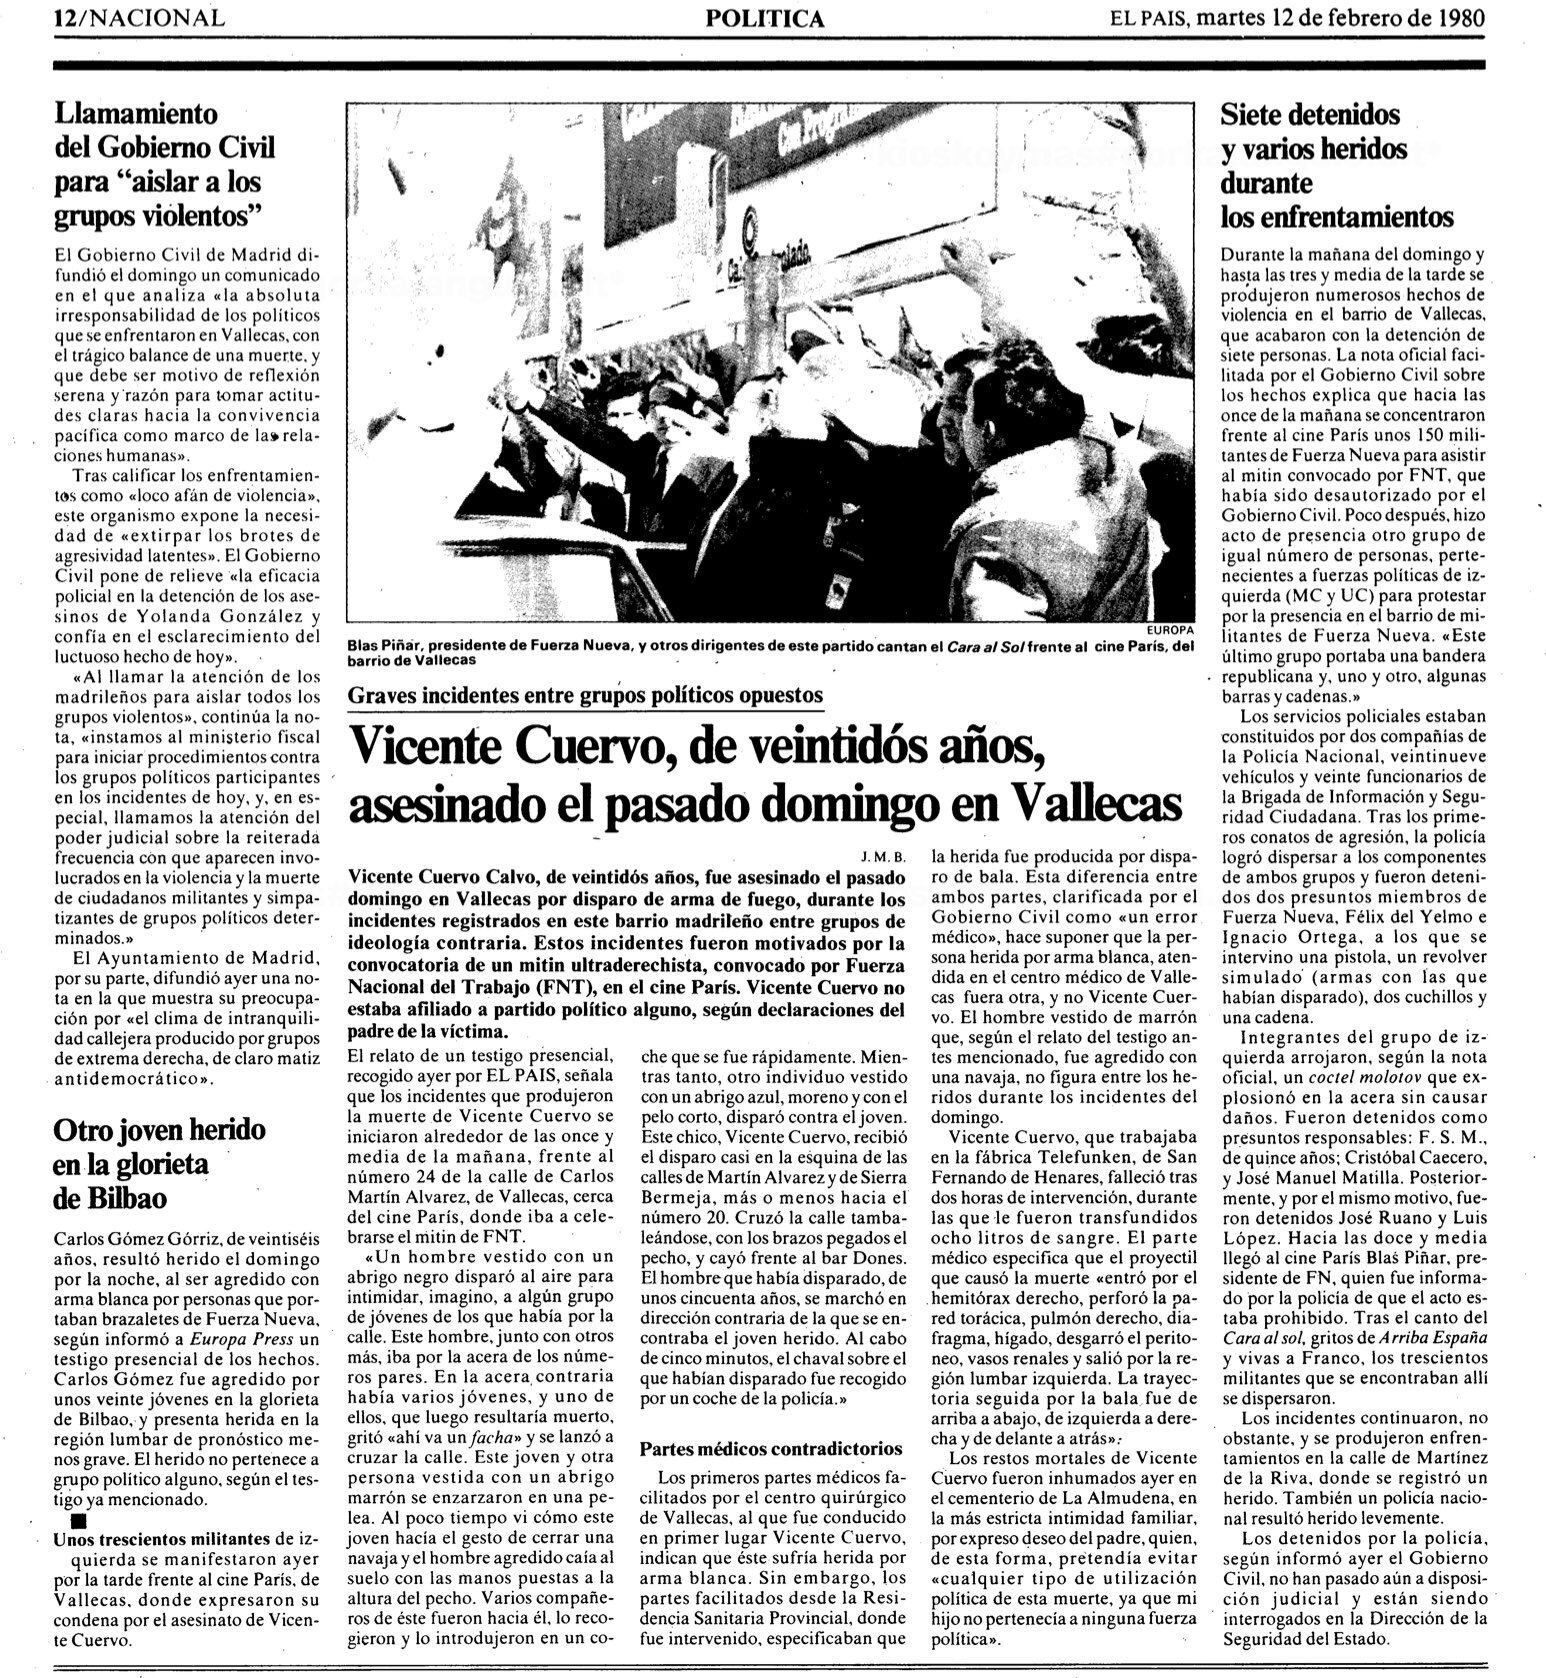 Crónica de EL PAÍS del asesinato de Vicente Cuervo, publicada el 12 de febrero de 1980.